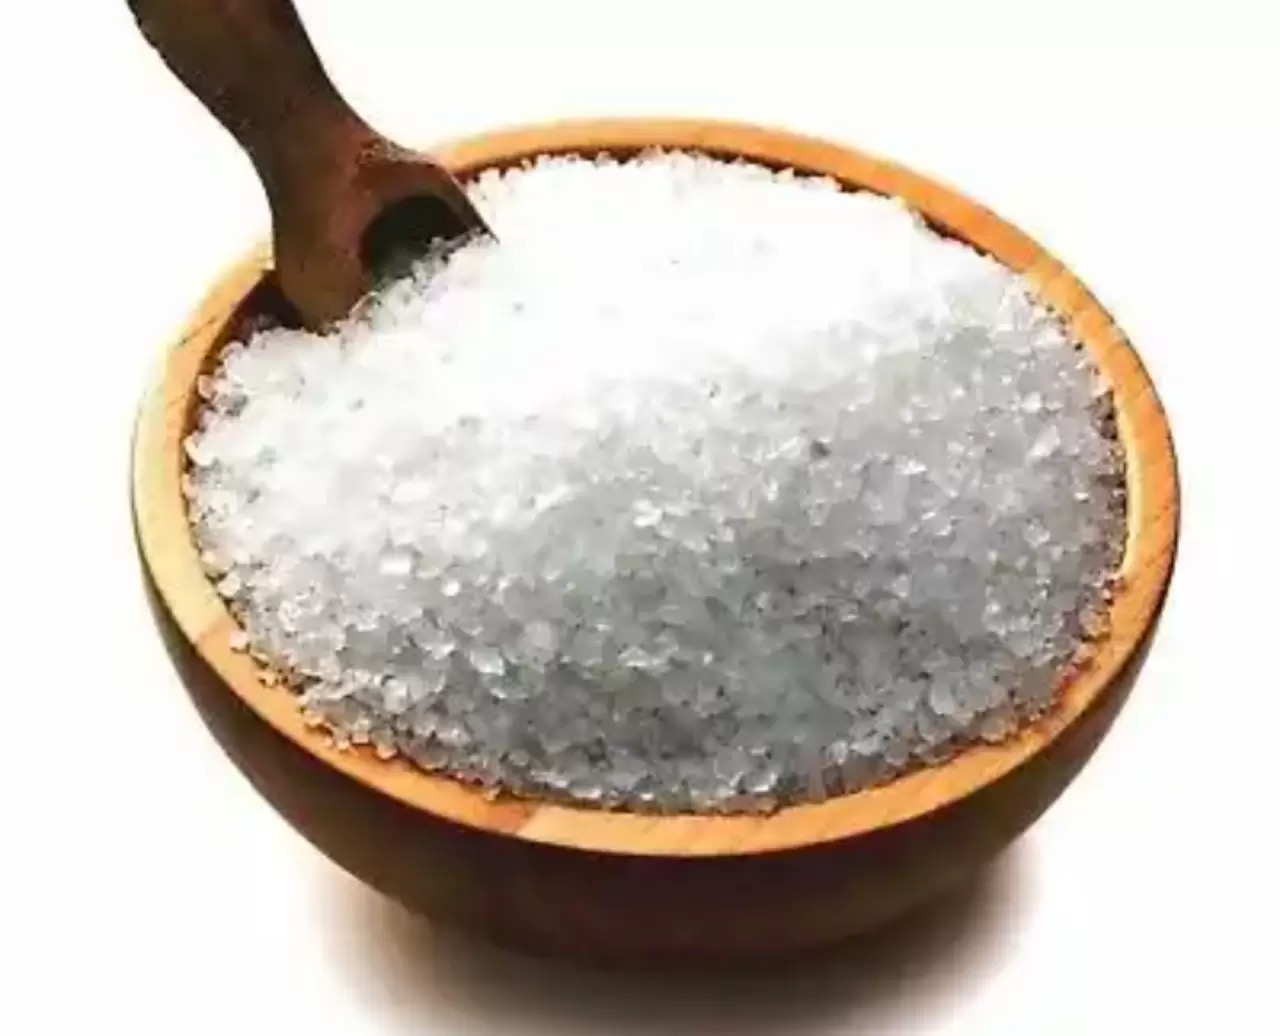 Salt: The Garlic And Salt Bath